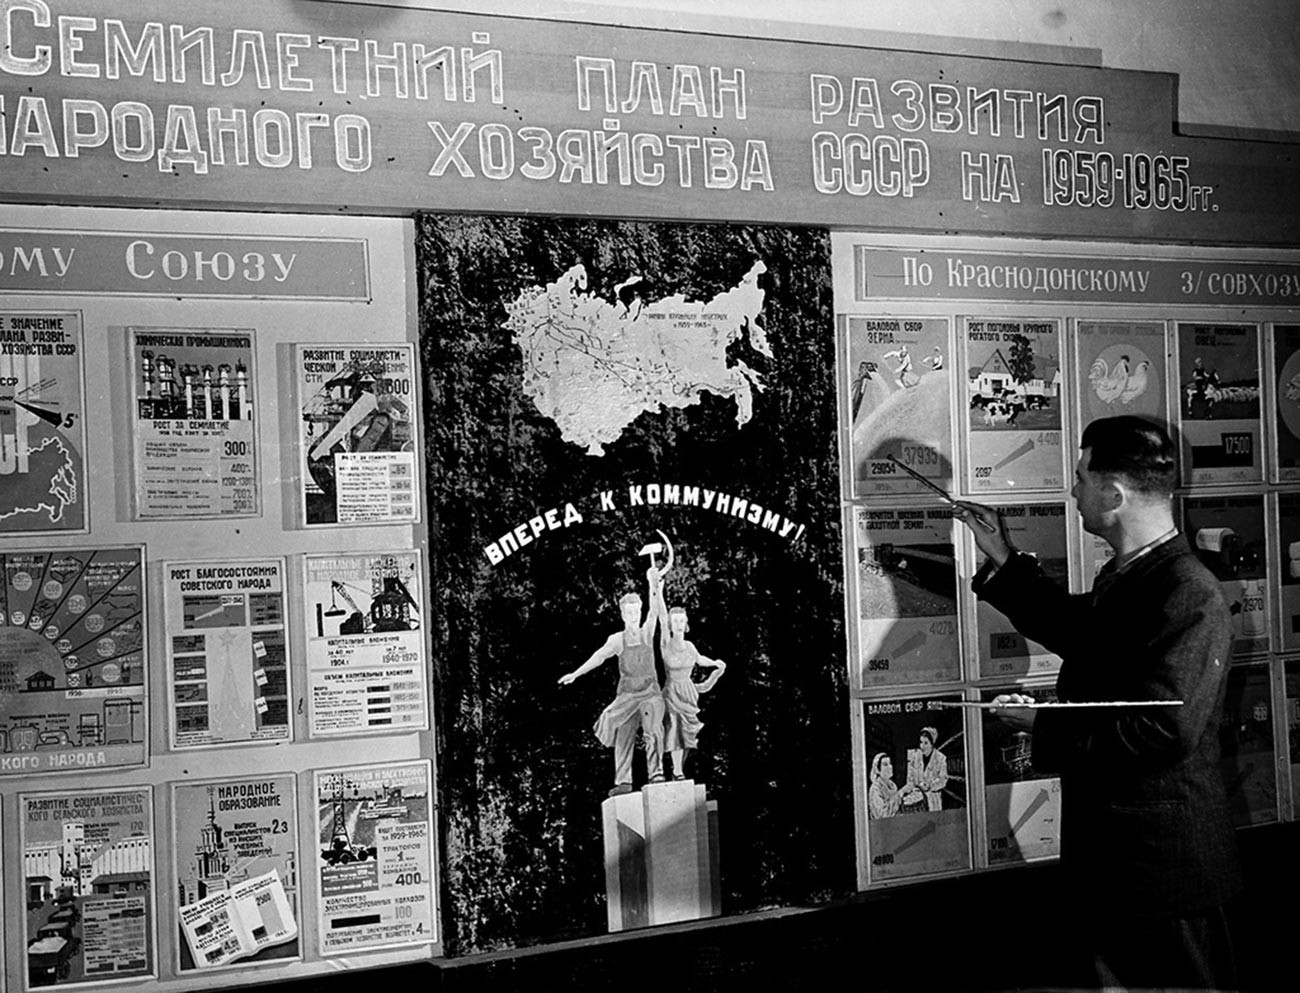 Der Mähdrescherfahrer Fjodor Frolow studiert den Siebenjahresplan zur landwirtschaftlichen Entwicklung im Gemeindezentrum Krasnodonski Sowchos in Kasachstan, 1959